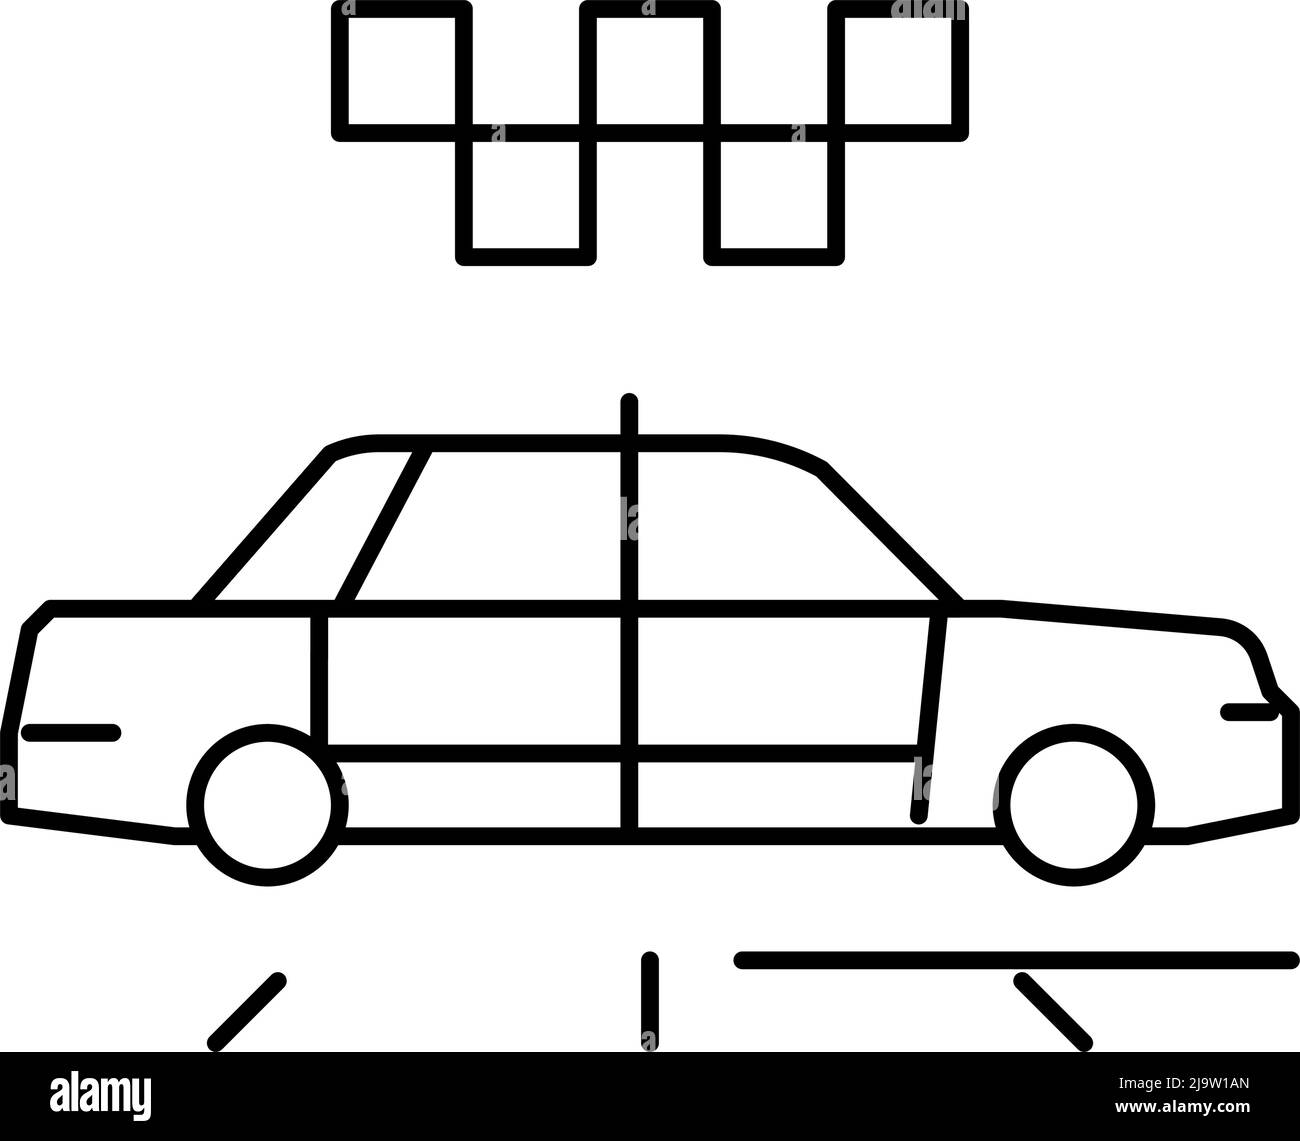 Abbildung des Symbols für die Taxi-Kabinenlinie Stock Vektor